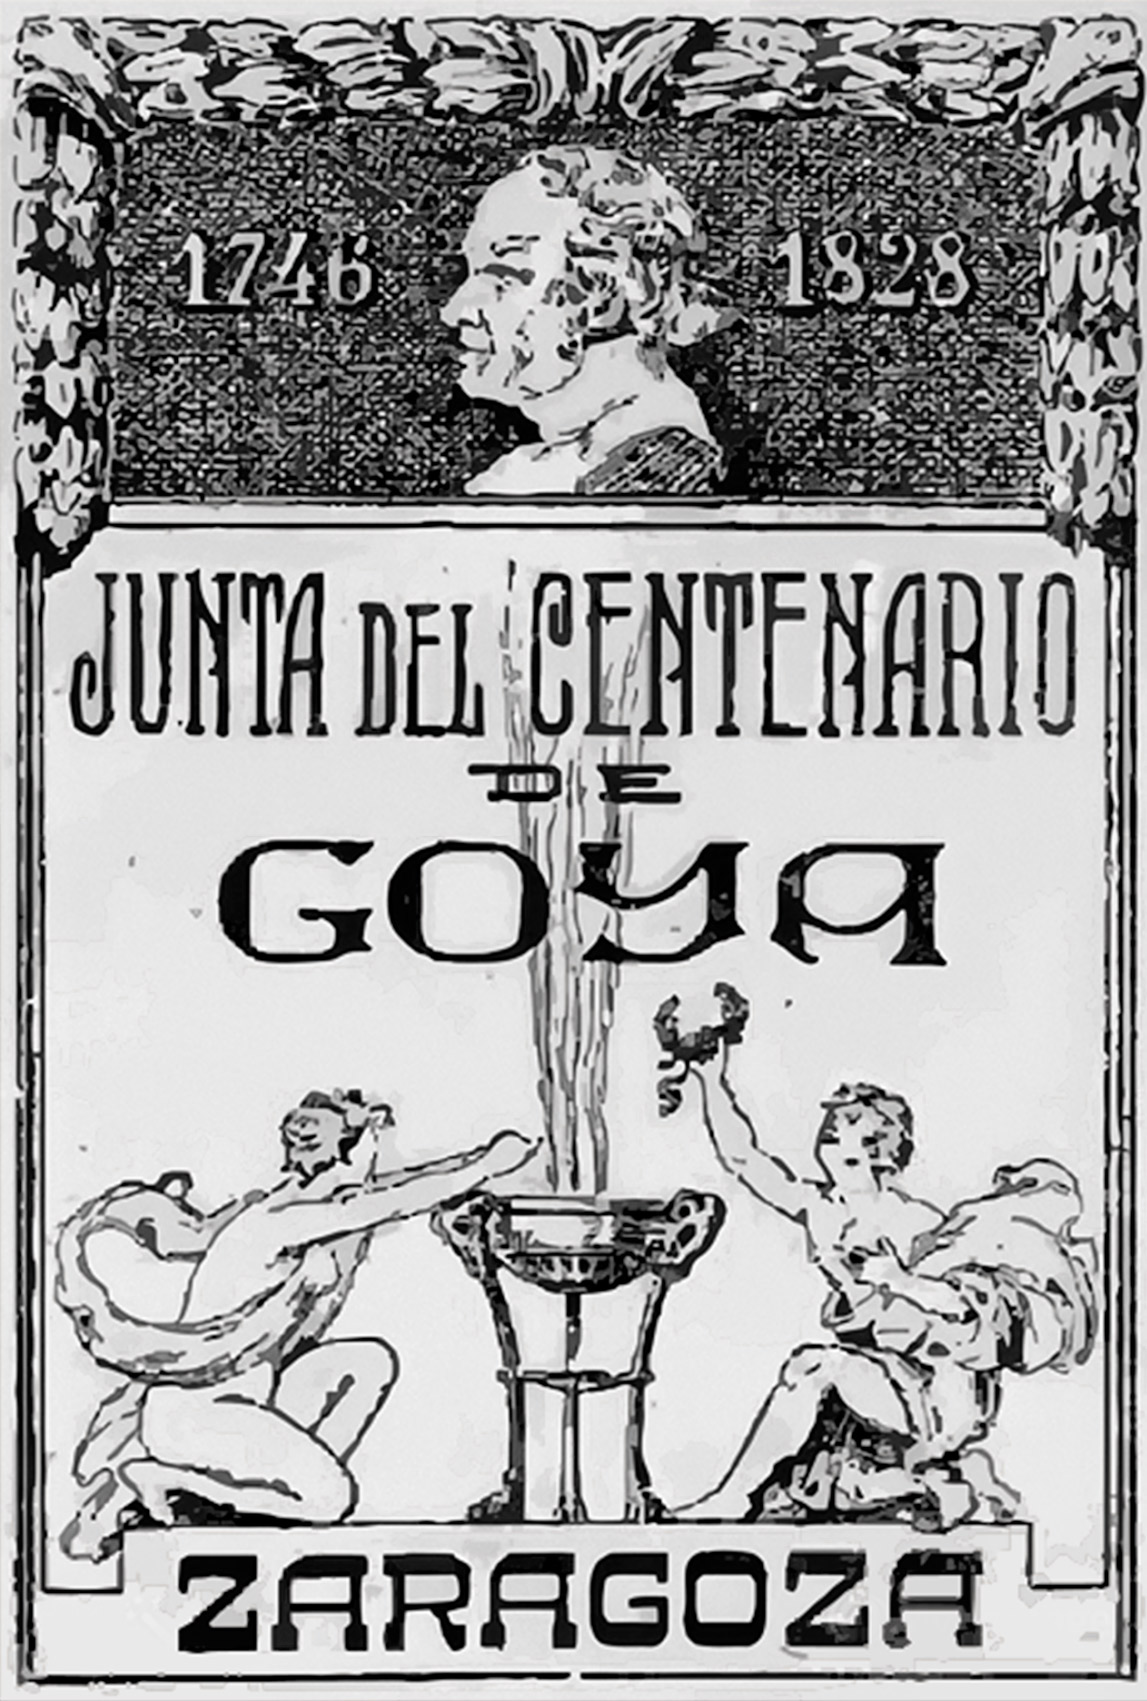 Emblema de la Junta del Centenario de Goya